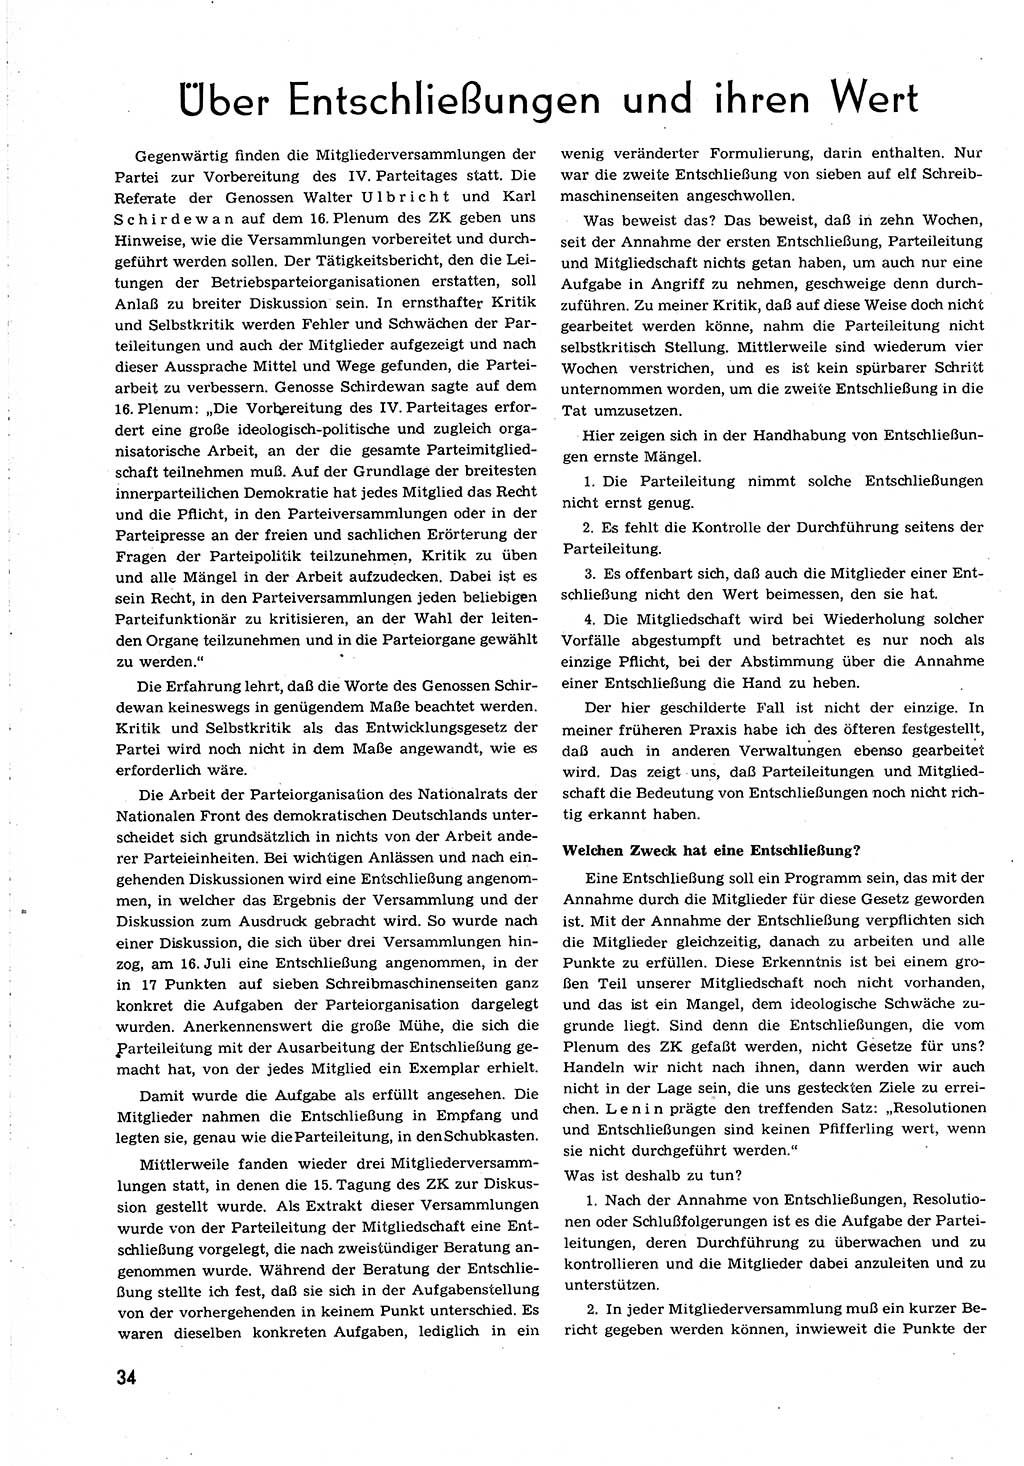 Neuer Weg (NW), Organ des Zentralkomitees (ZK) [Sozialistische Einheitspartei Deutschlands (SED)] für alle Parteiarbeiter, 8. Jahrgang [Deutsche Demokratische Republik (DDR)] 1953, Heft 23/34 (NW ZK SED DDR 1953, H. 23/34)